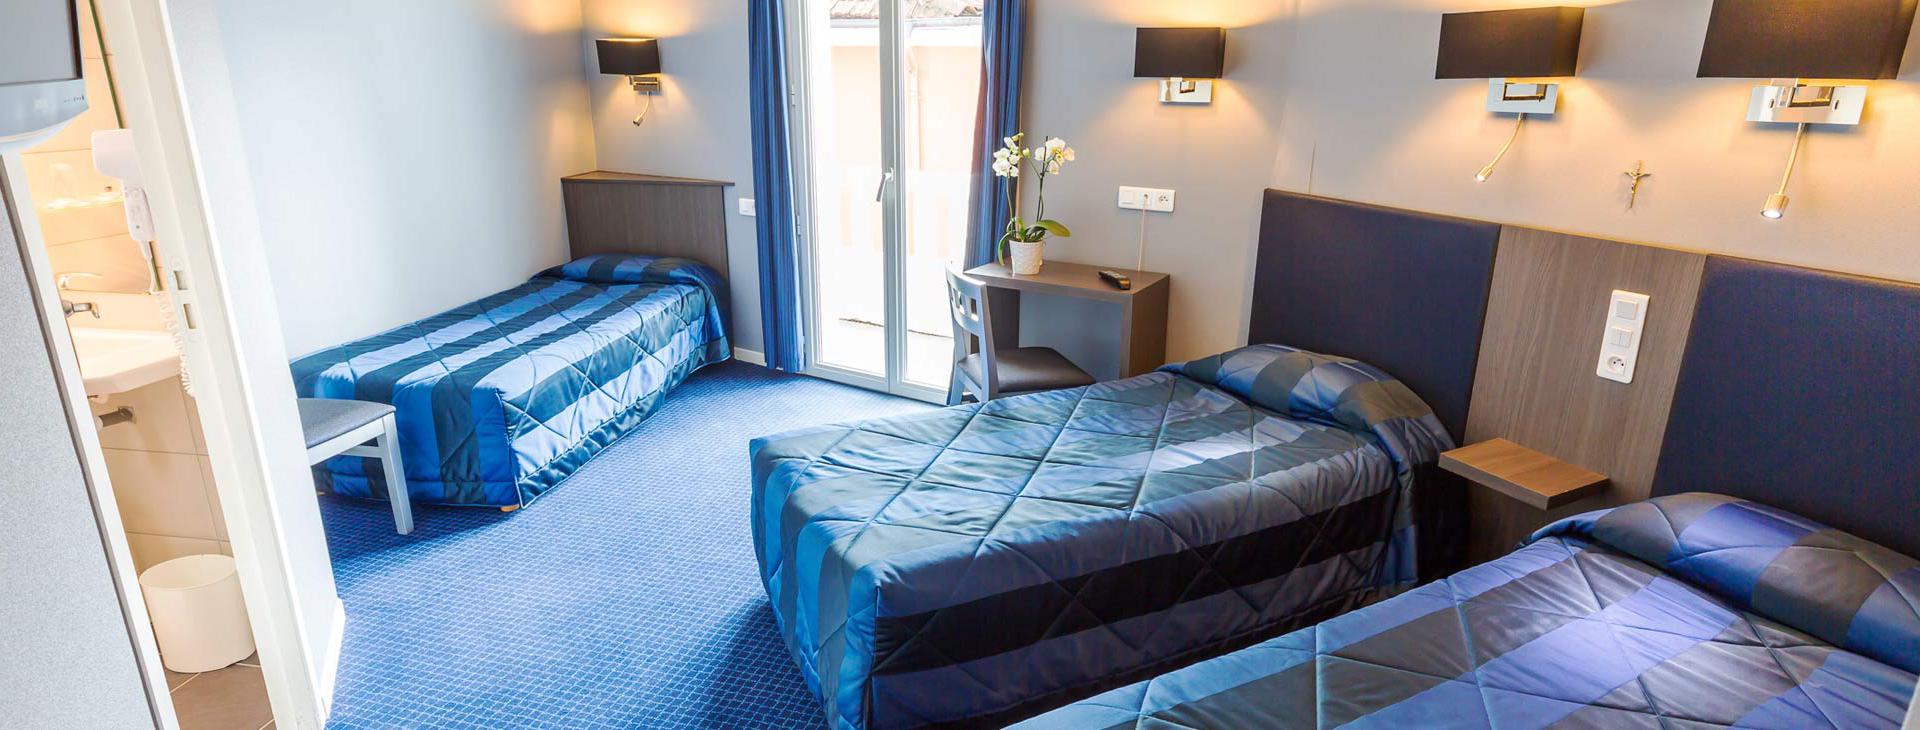 Hotel d'Irlande 3 étoiles Lourdes chambre tout confort